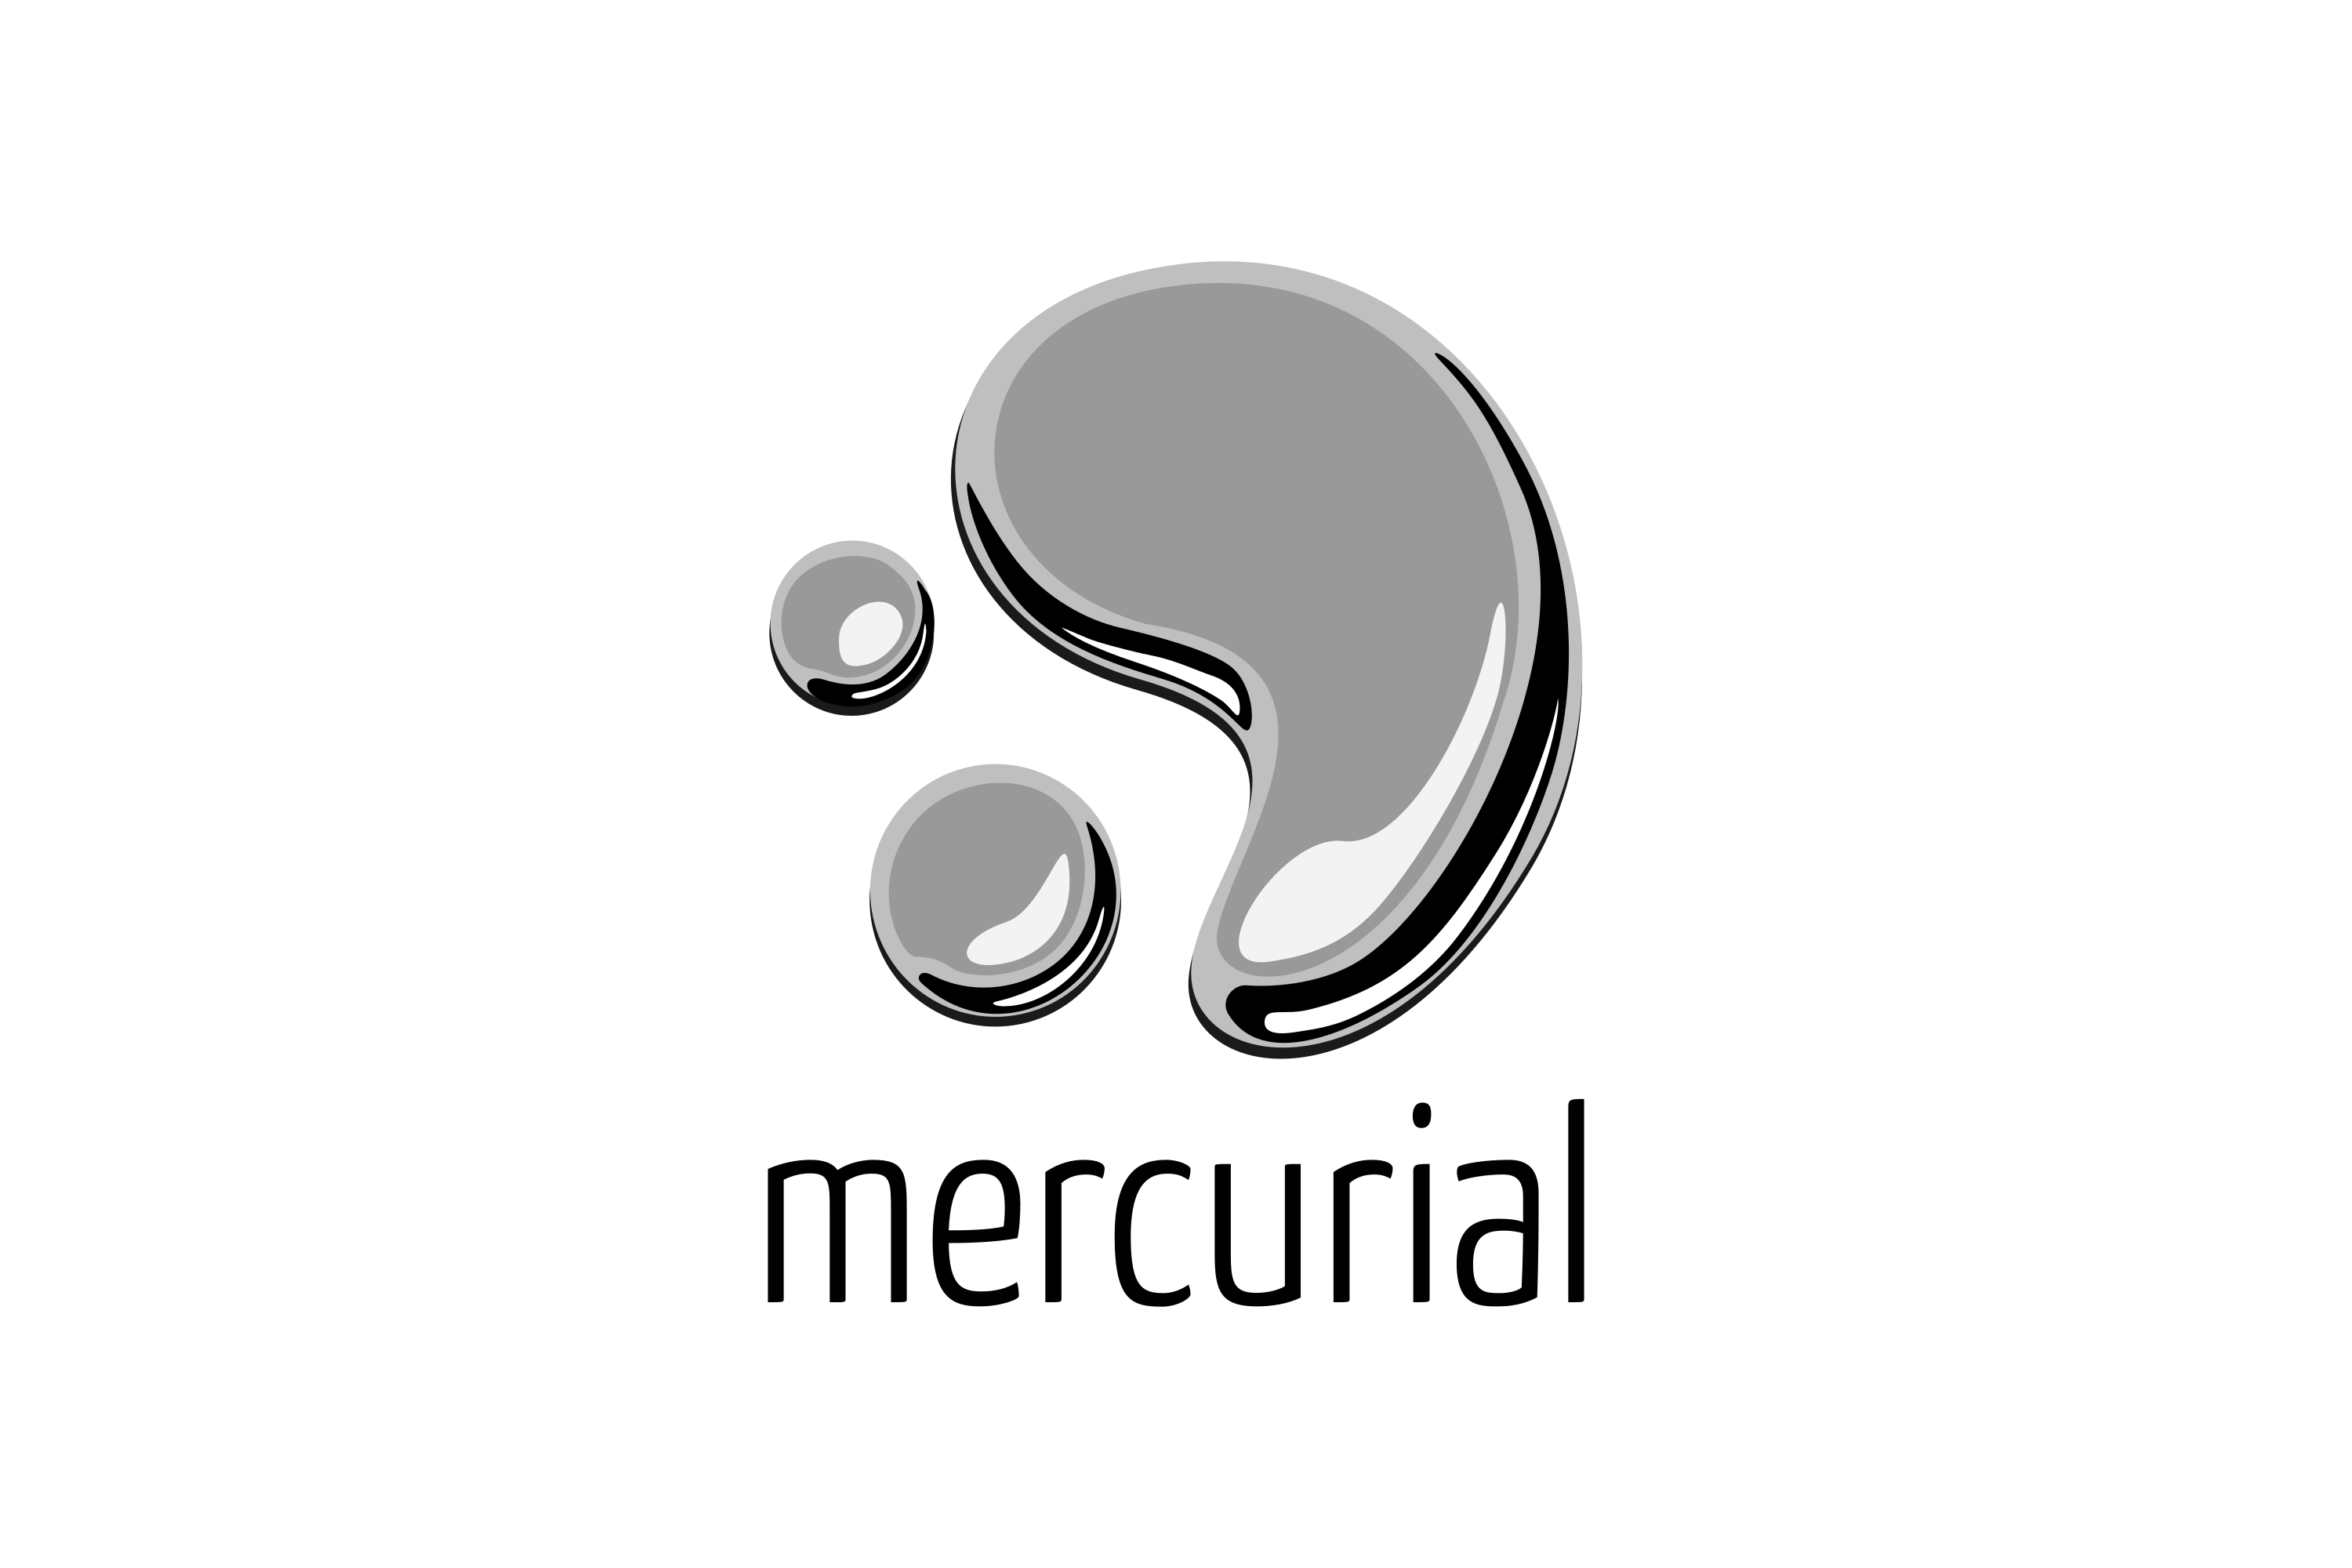 mercurial logo